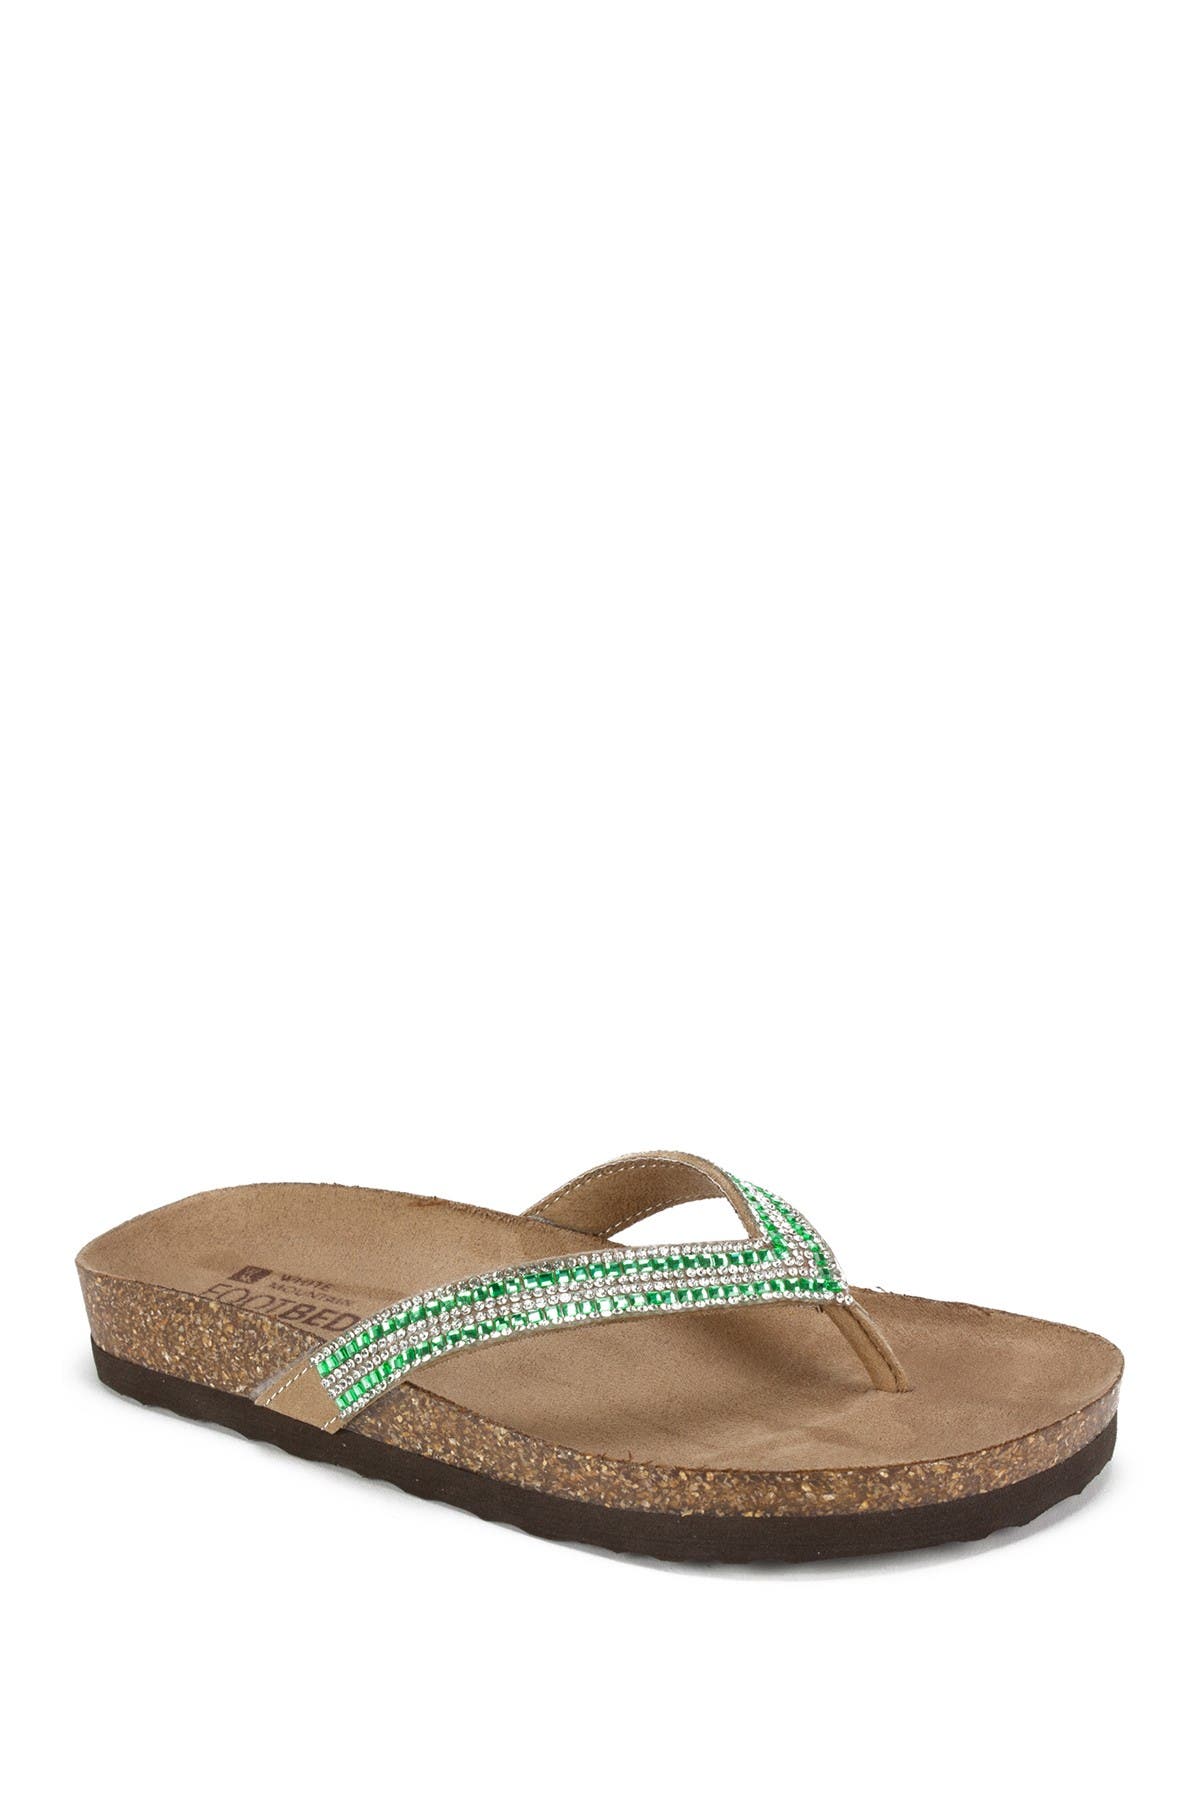 embellished flip flop sandals